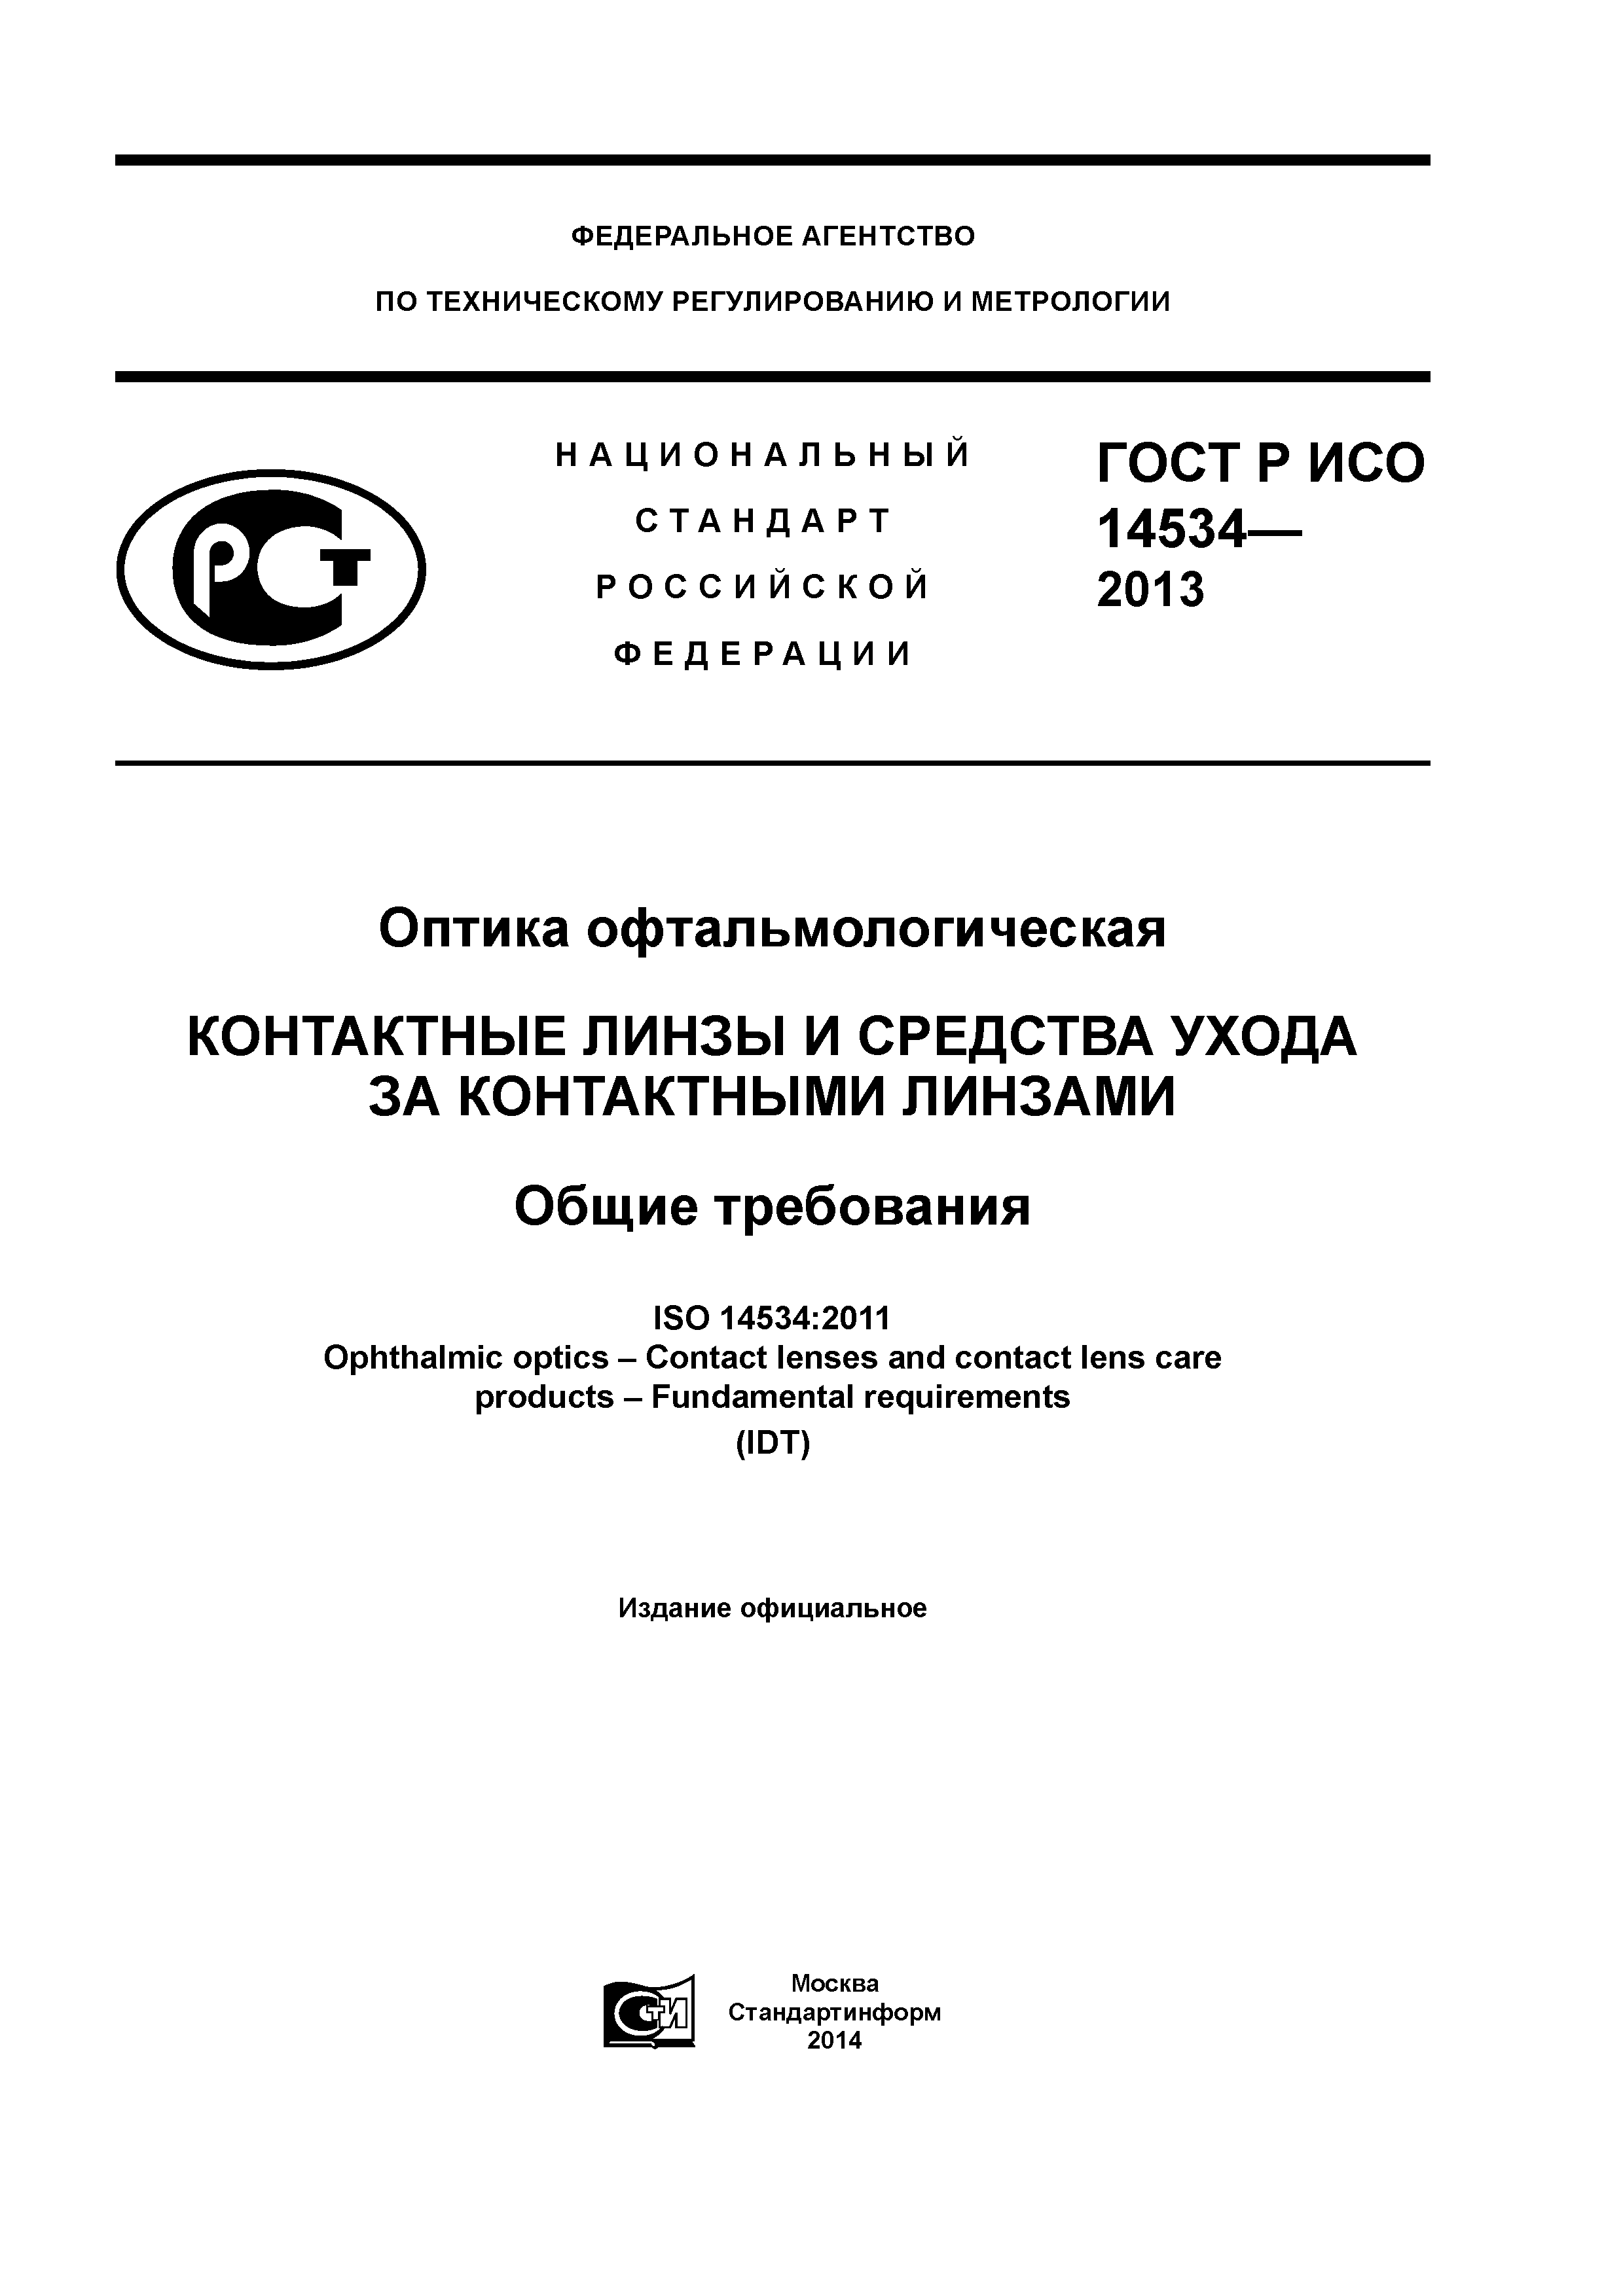 ГОСТ Р ИСО 14534-2013